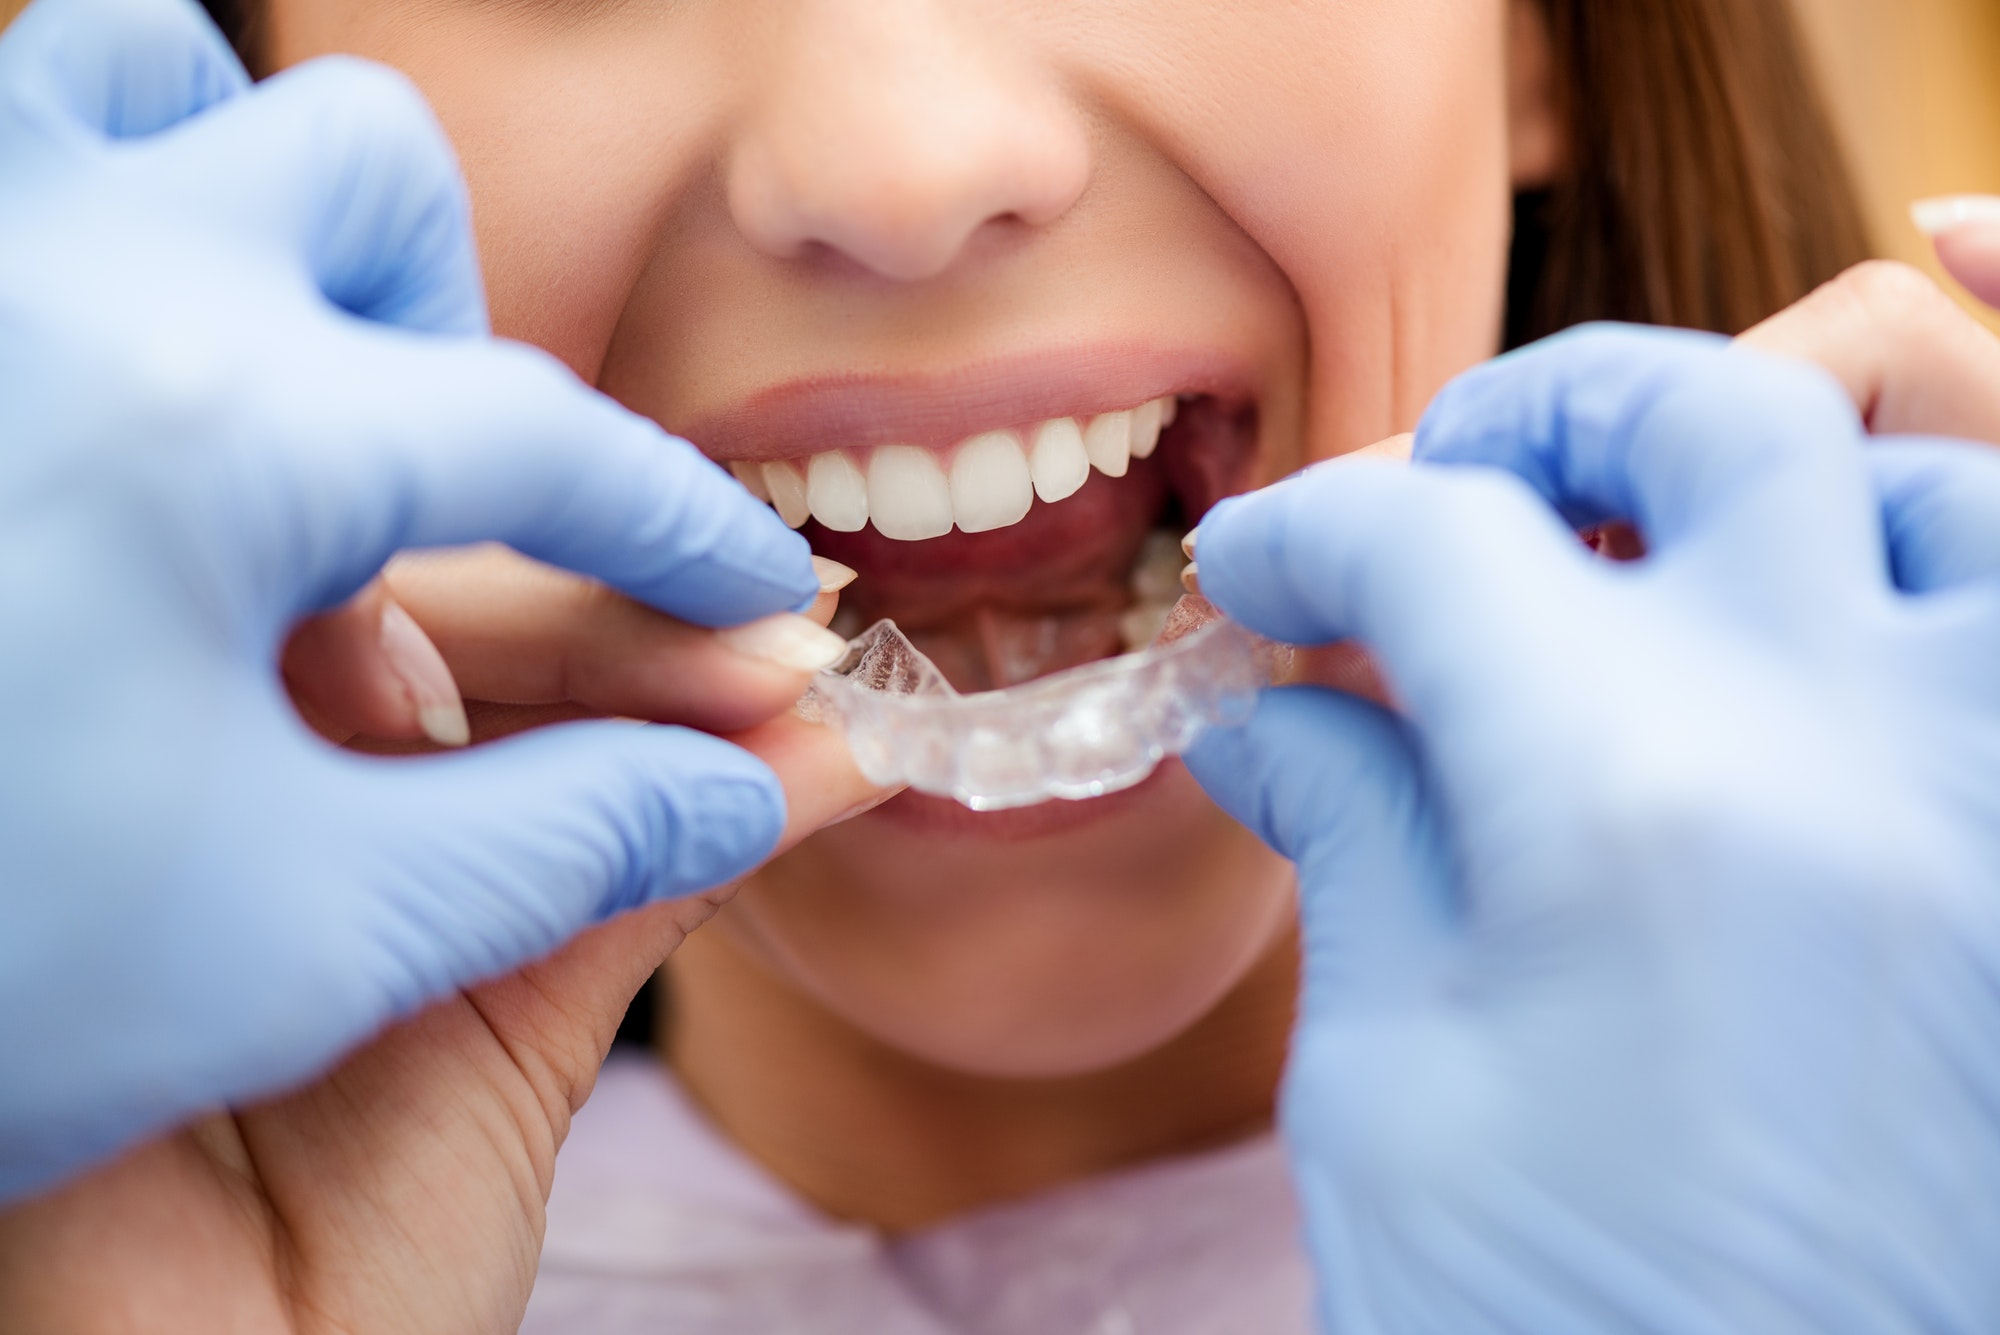 Fundas tratamiento ortodoncia